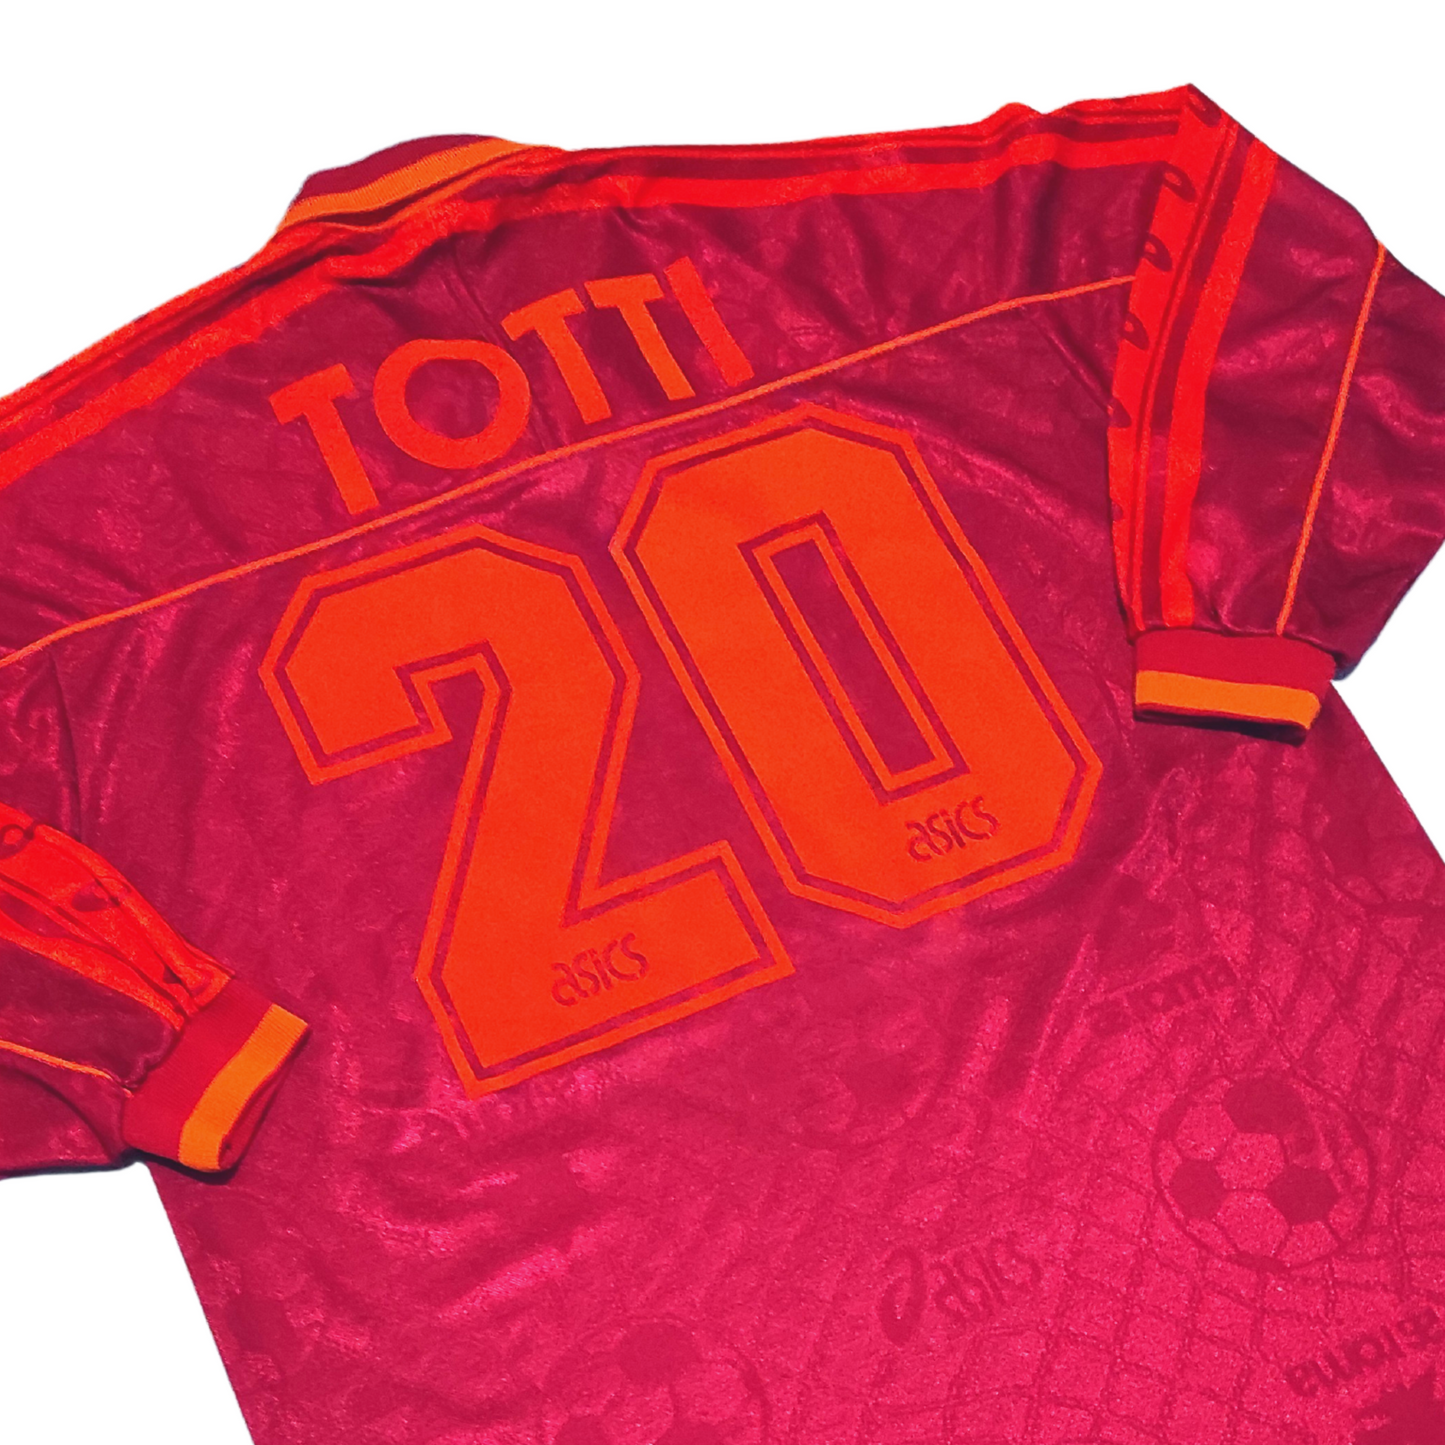 Roma Home L/S Shirt 1995-1996 Totti (M)